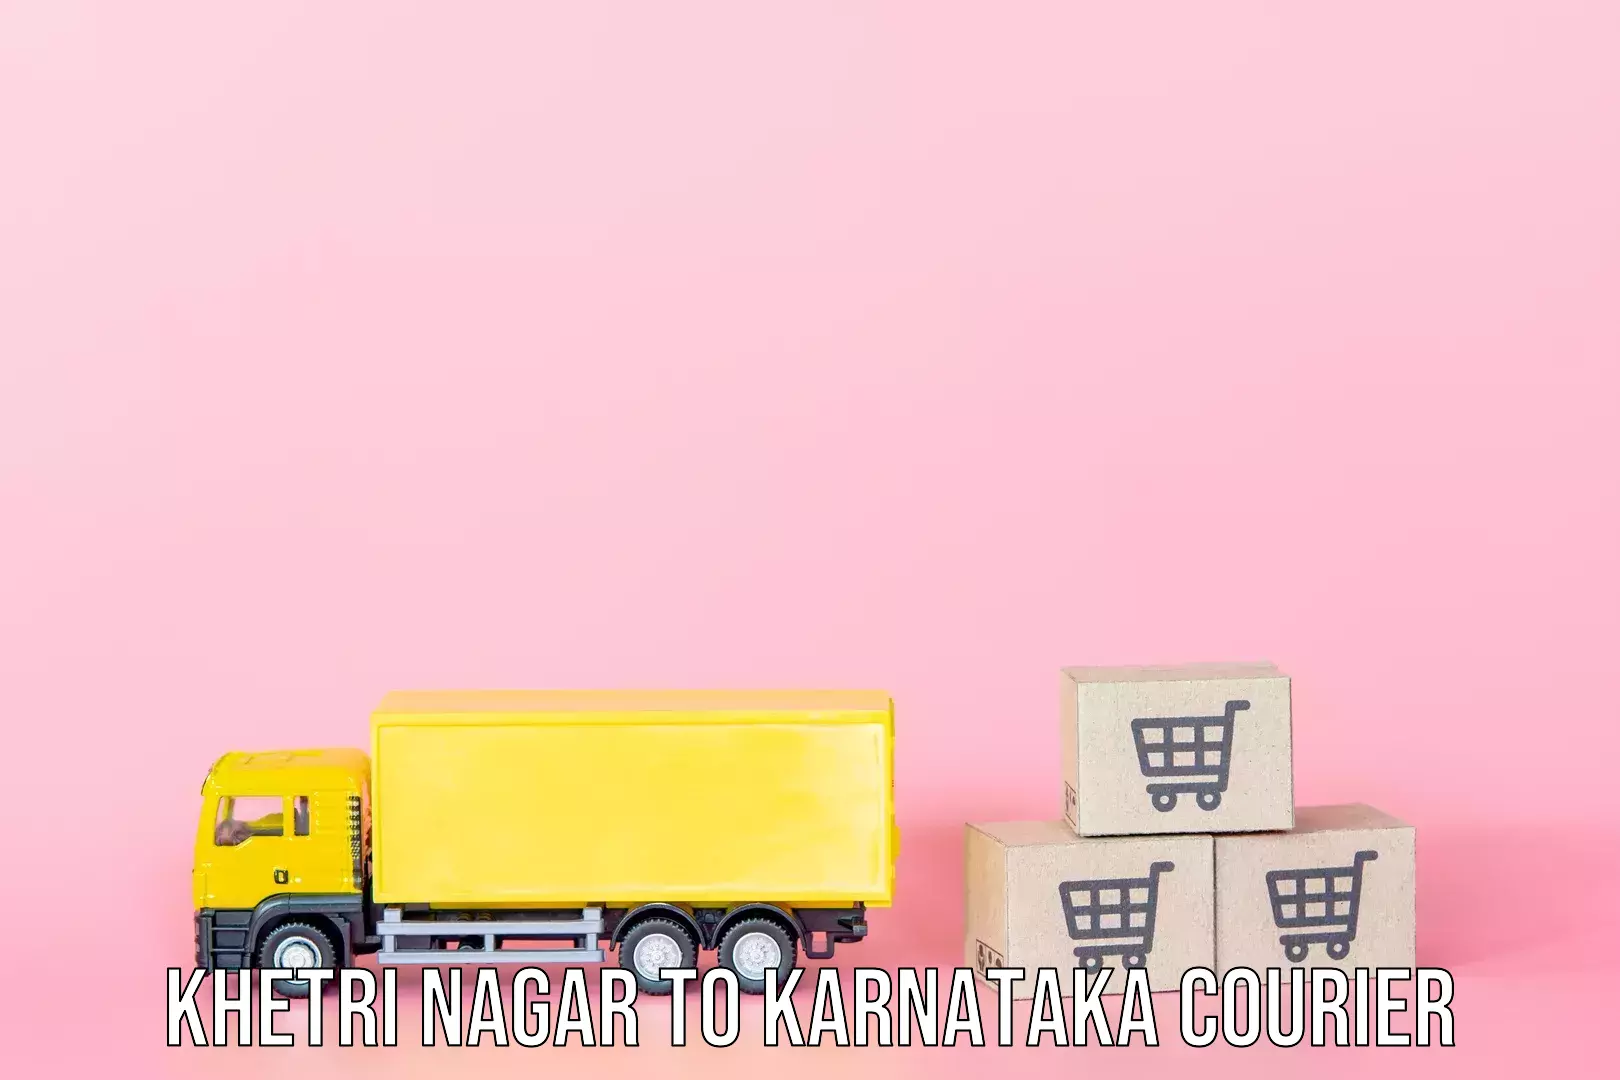 Baggage shipping experts Khetri Nagar to Mangalore